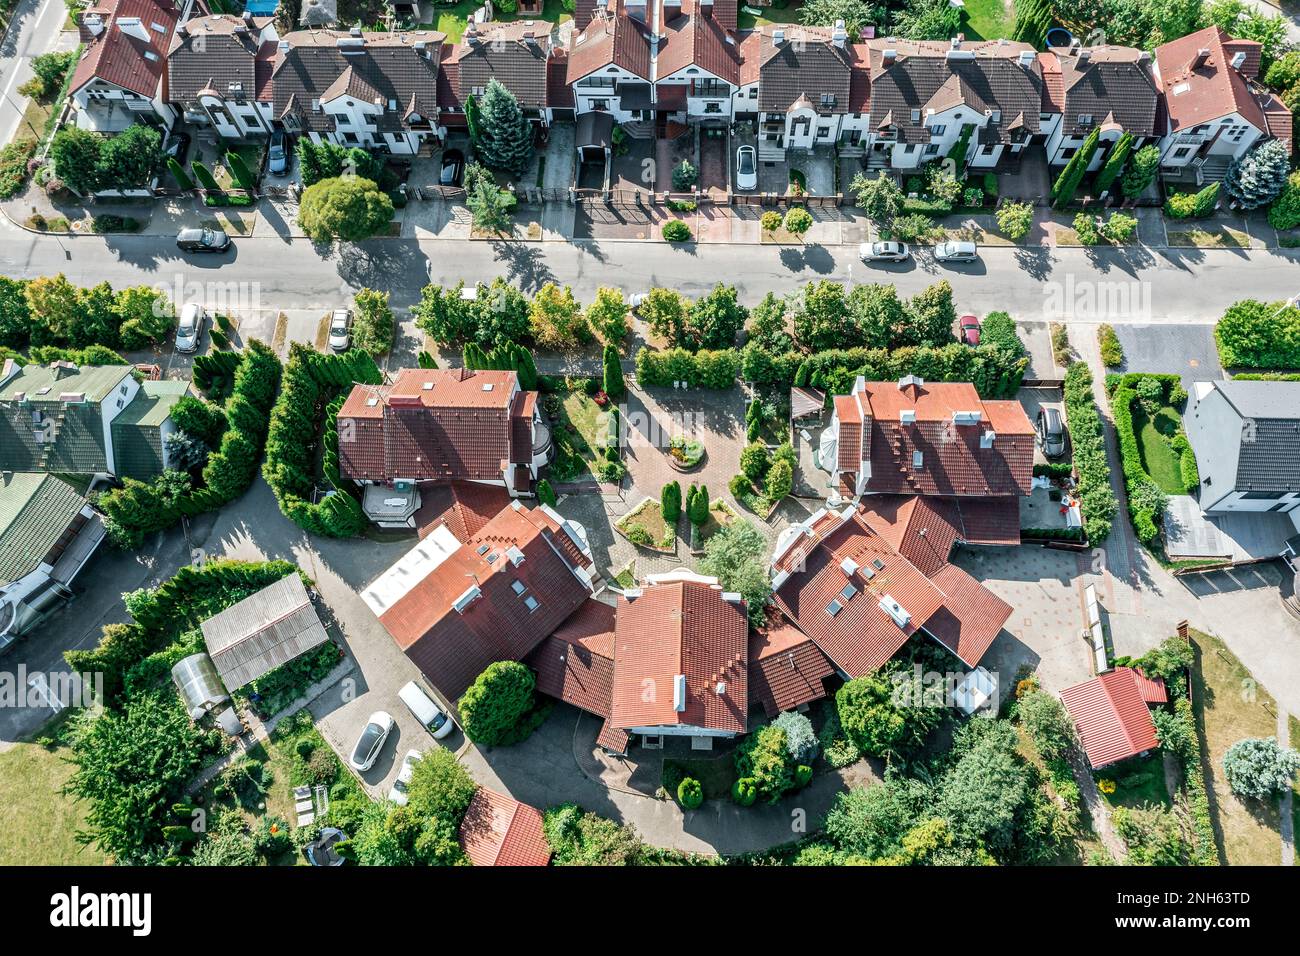 complexe de maisons en rangée dans le quartier de banlieue en été ensoleillé. vue aérienne du dessus depuis un drone volant. Banque D'Images